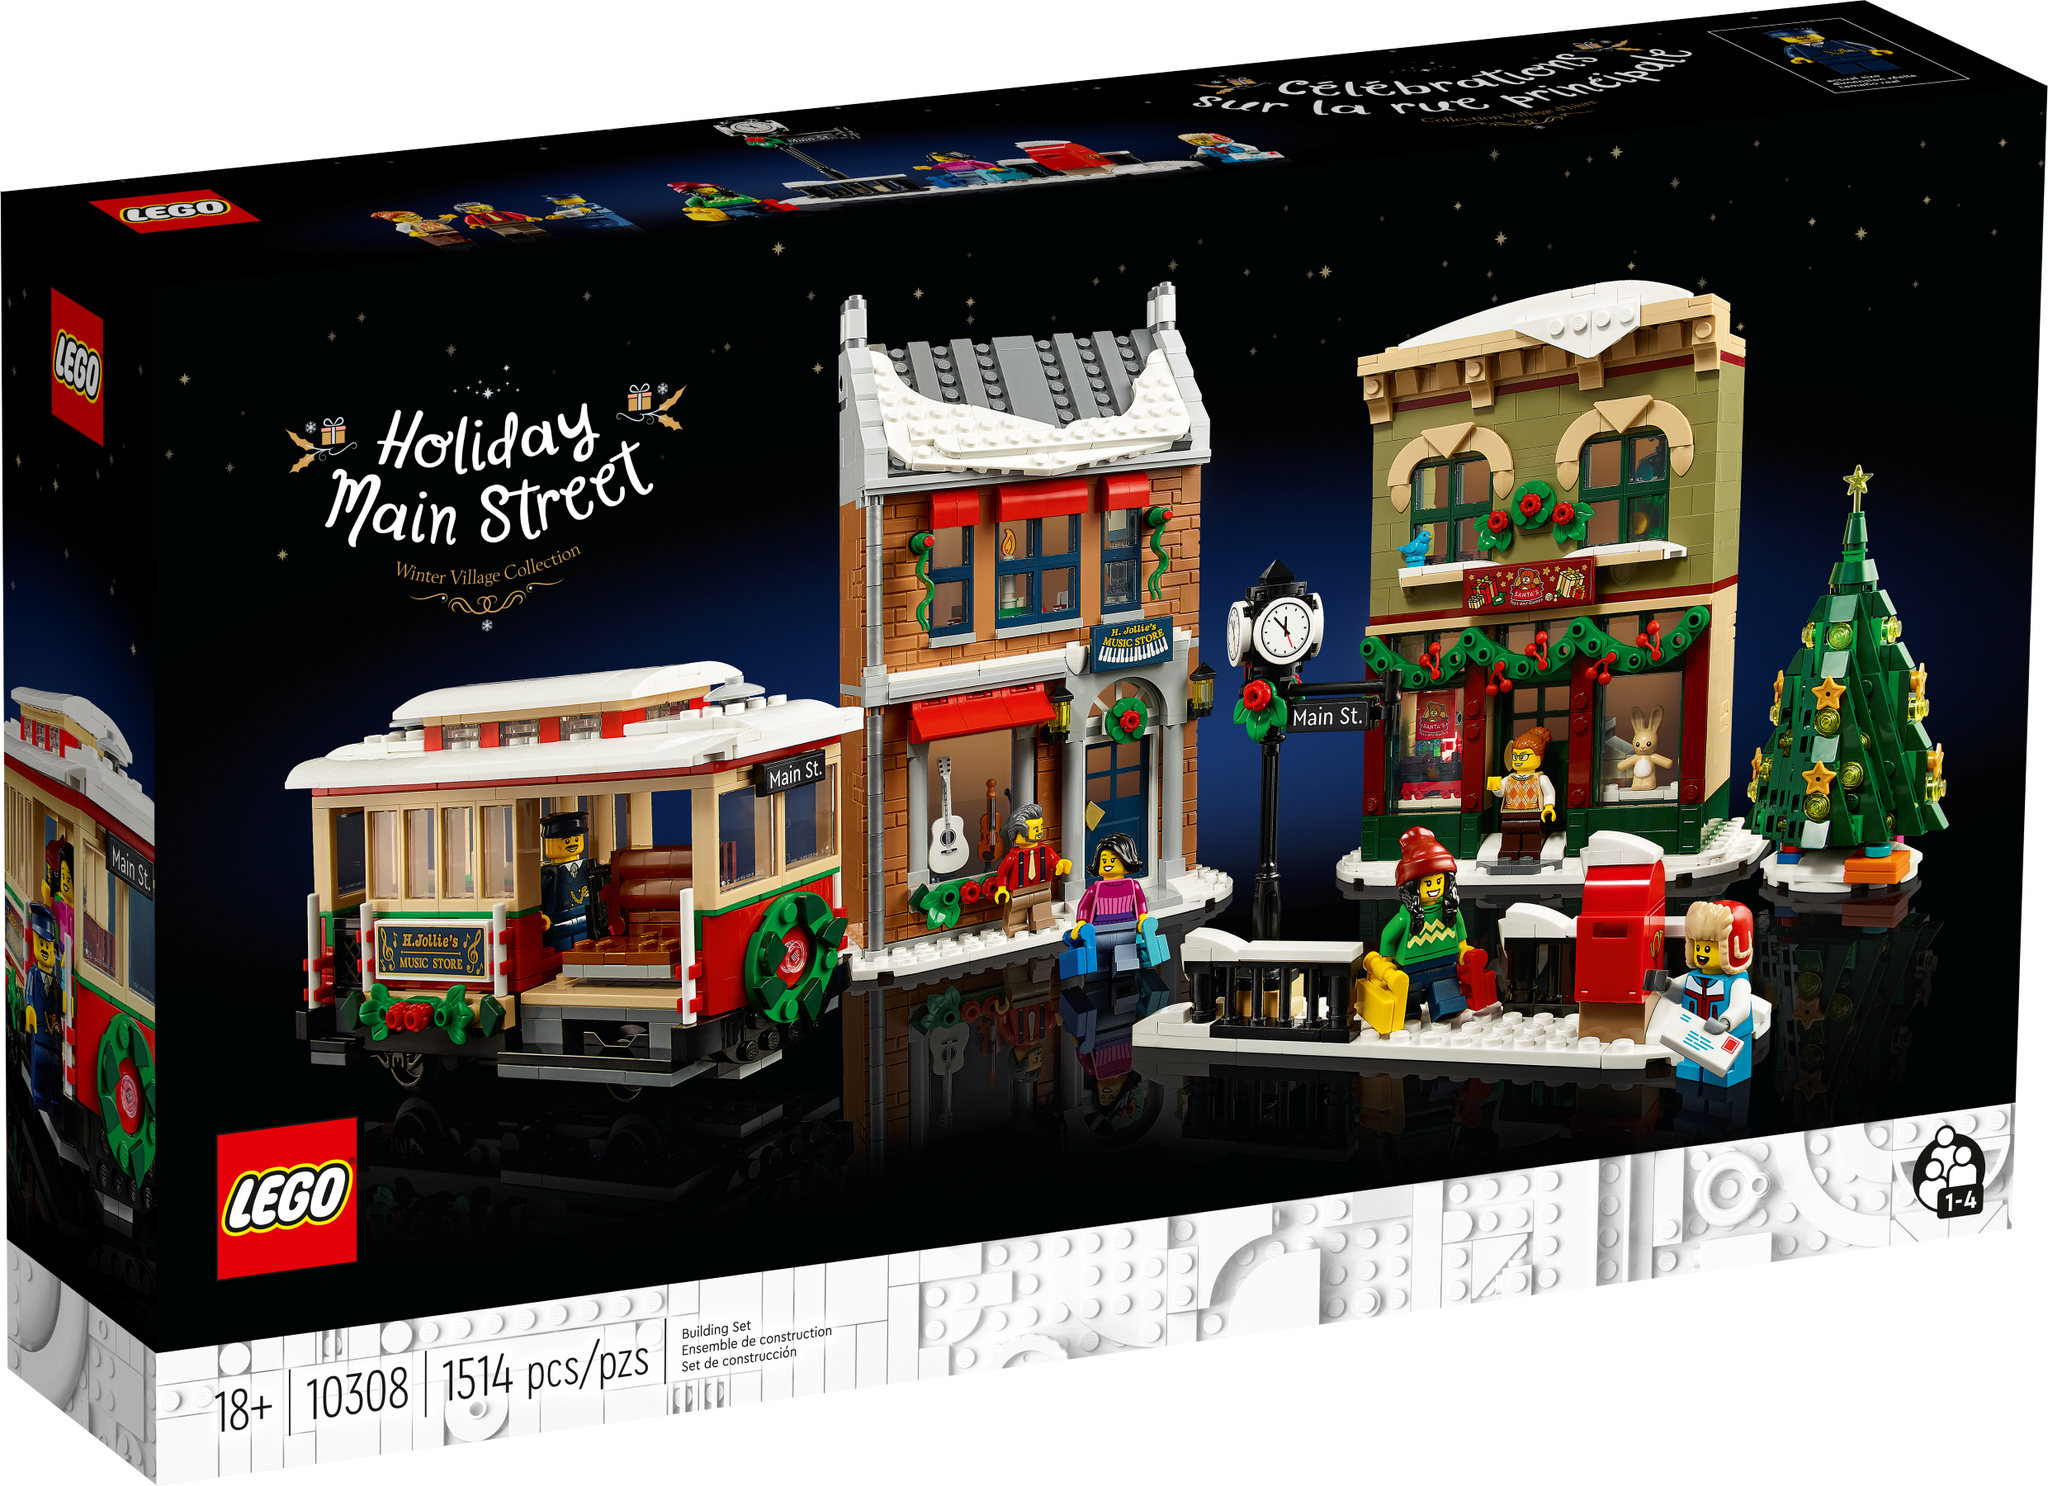 LEGO Icons Weihnachtlich geschmückte Hauptstrasse (10308) - im GOLDSTIEN.SHOP verfügbar mit Gratisversand ab Schweizer Lager! (5702017153285)